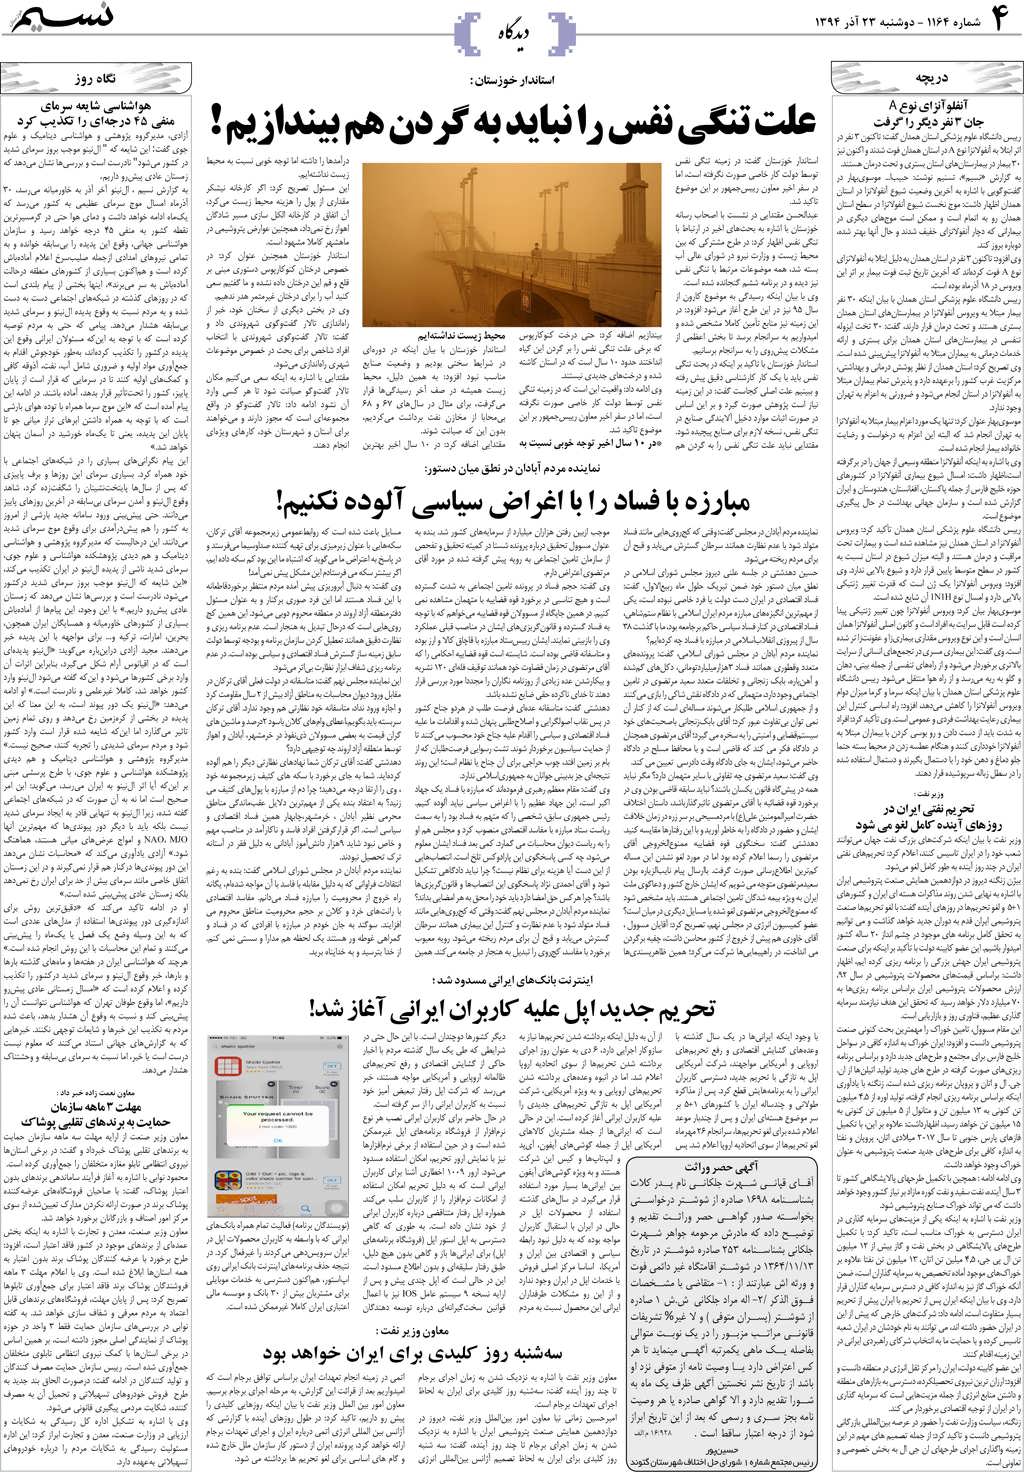 صفحه دیدگاه روزنامه نسیم شماره 1164